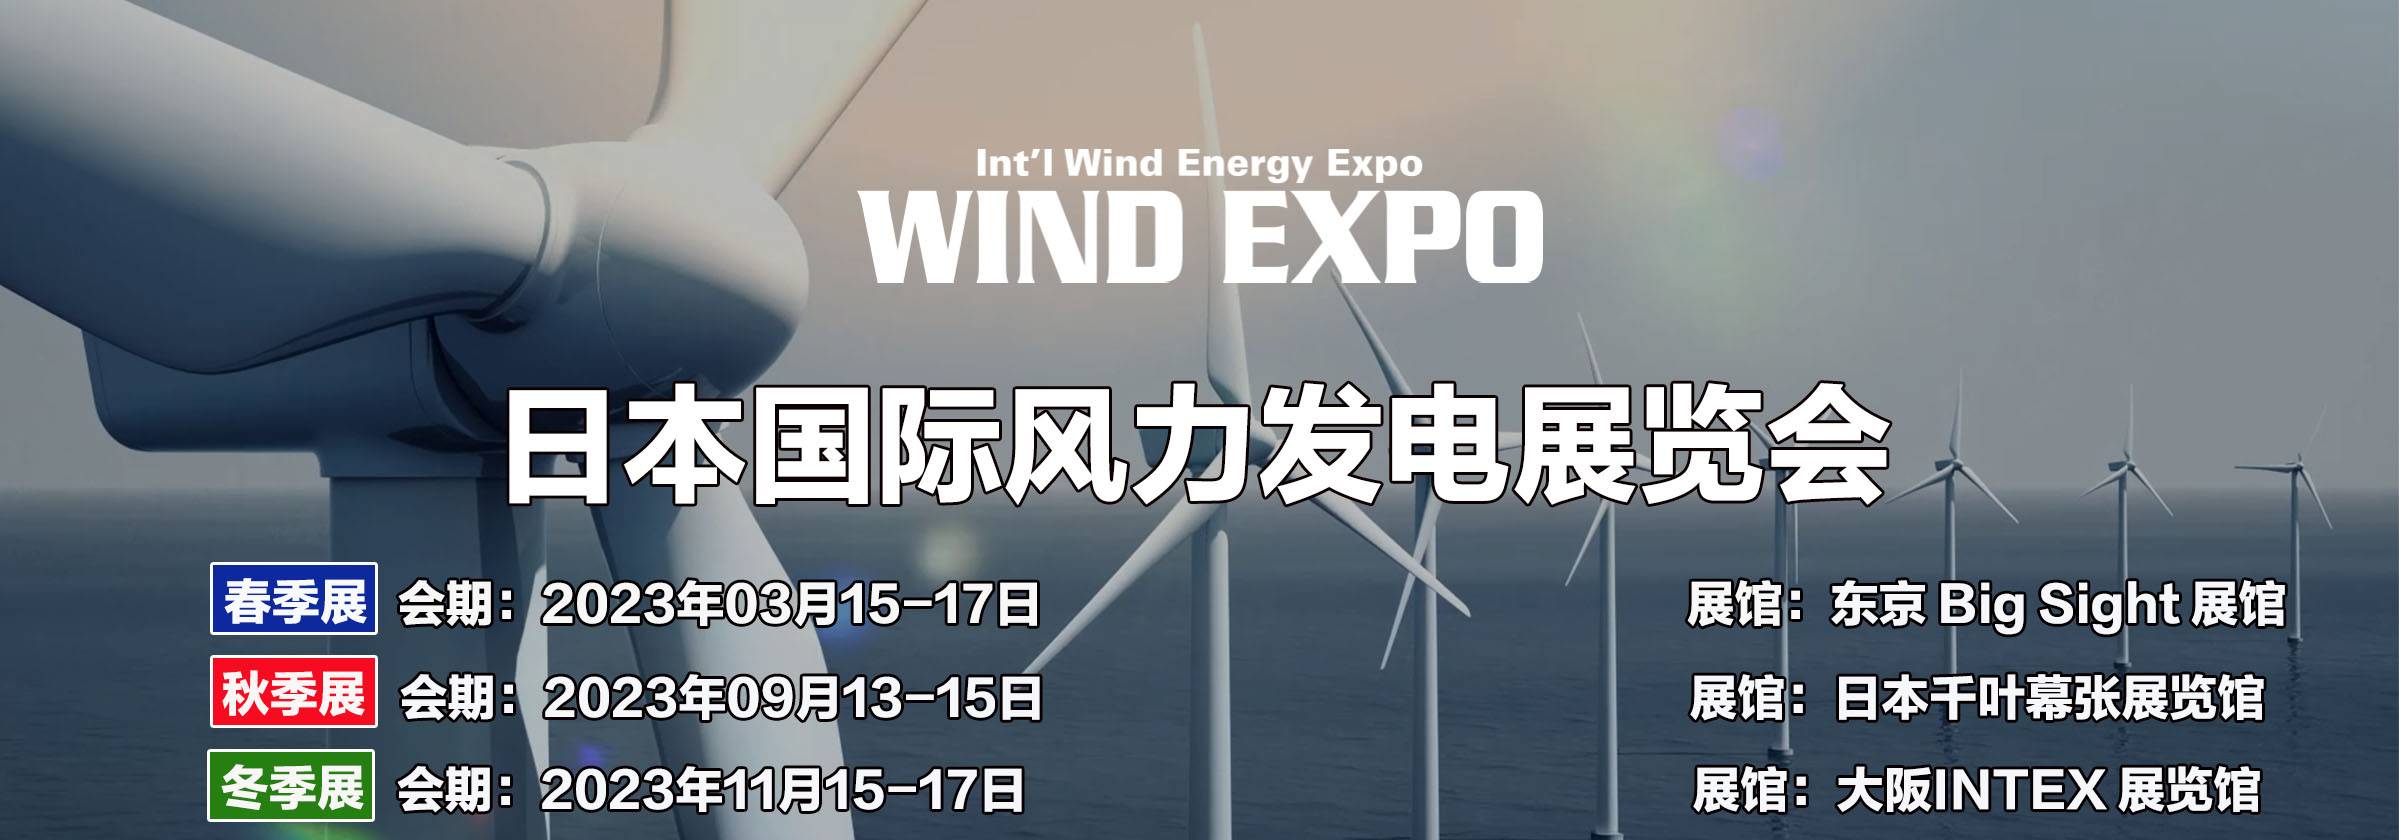 日本风力发电展(1).jpg